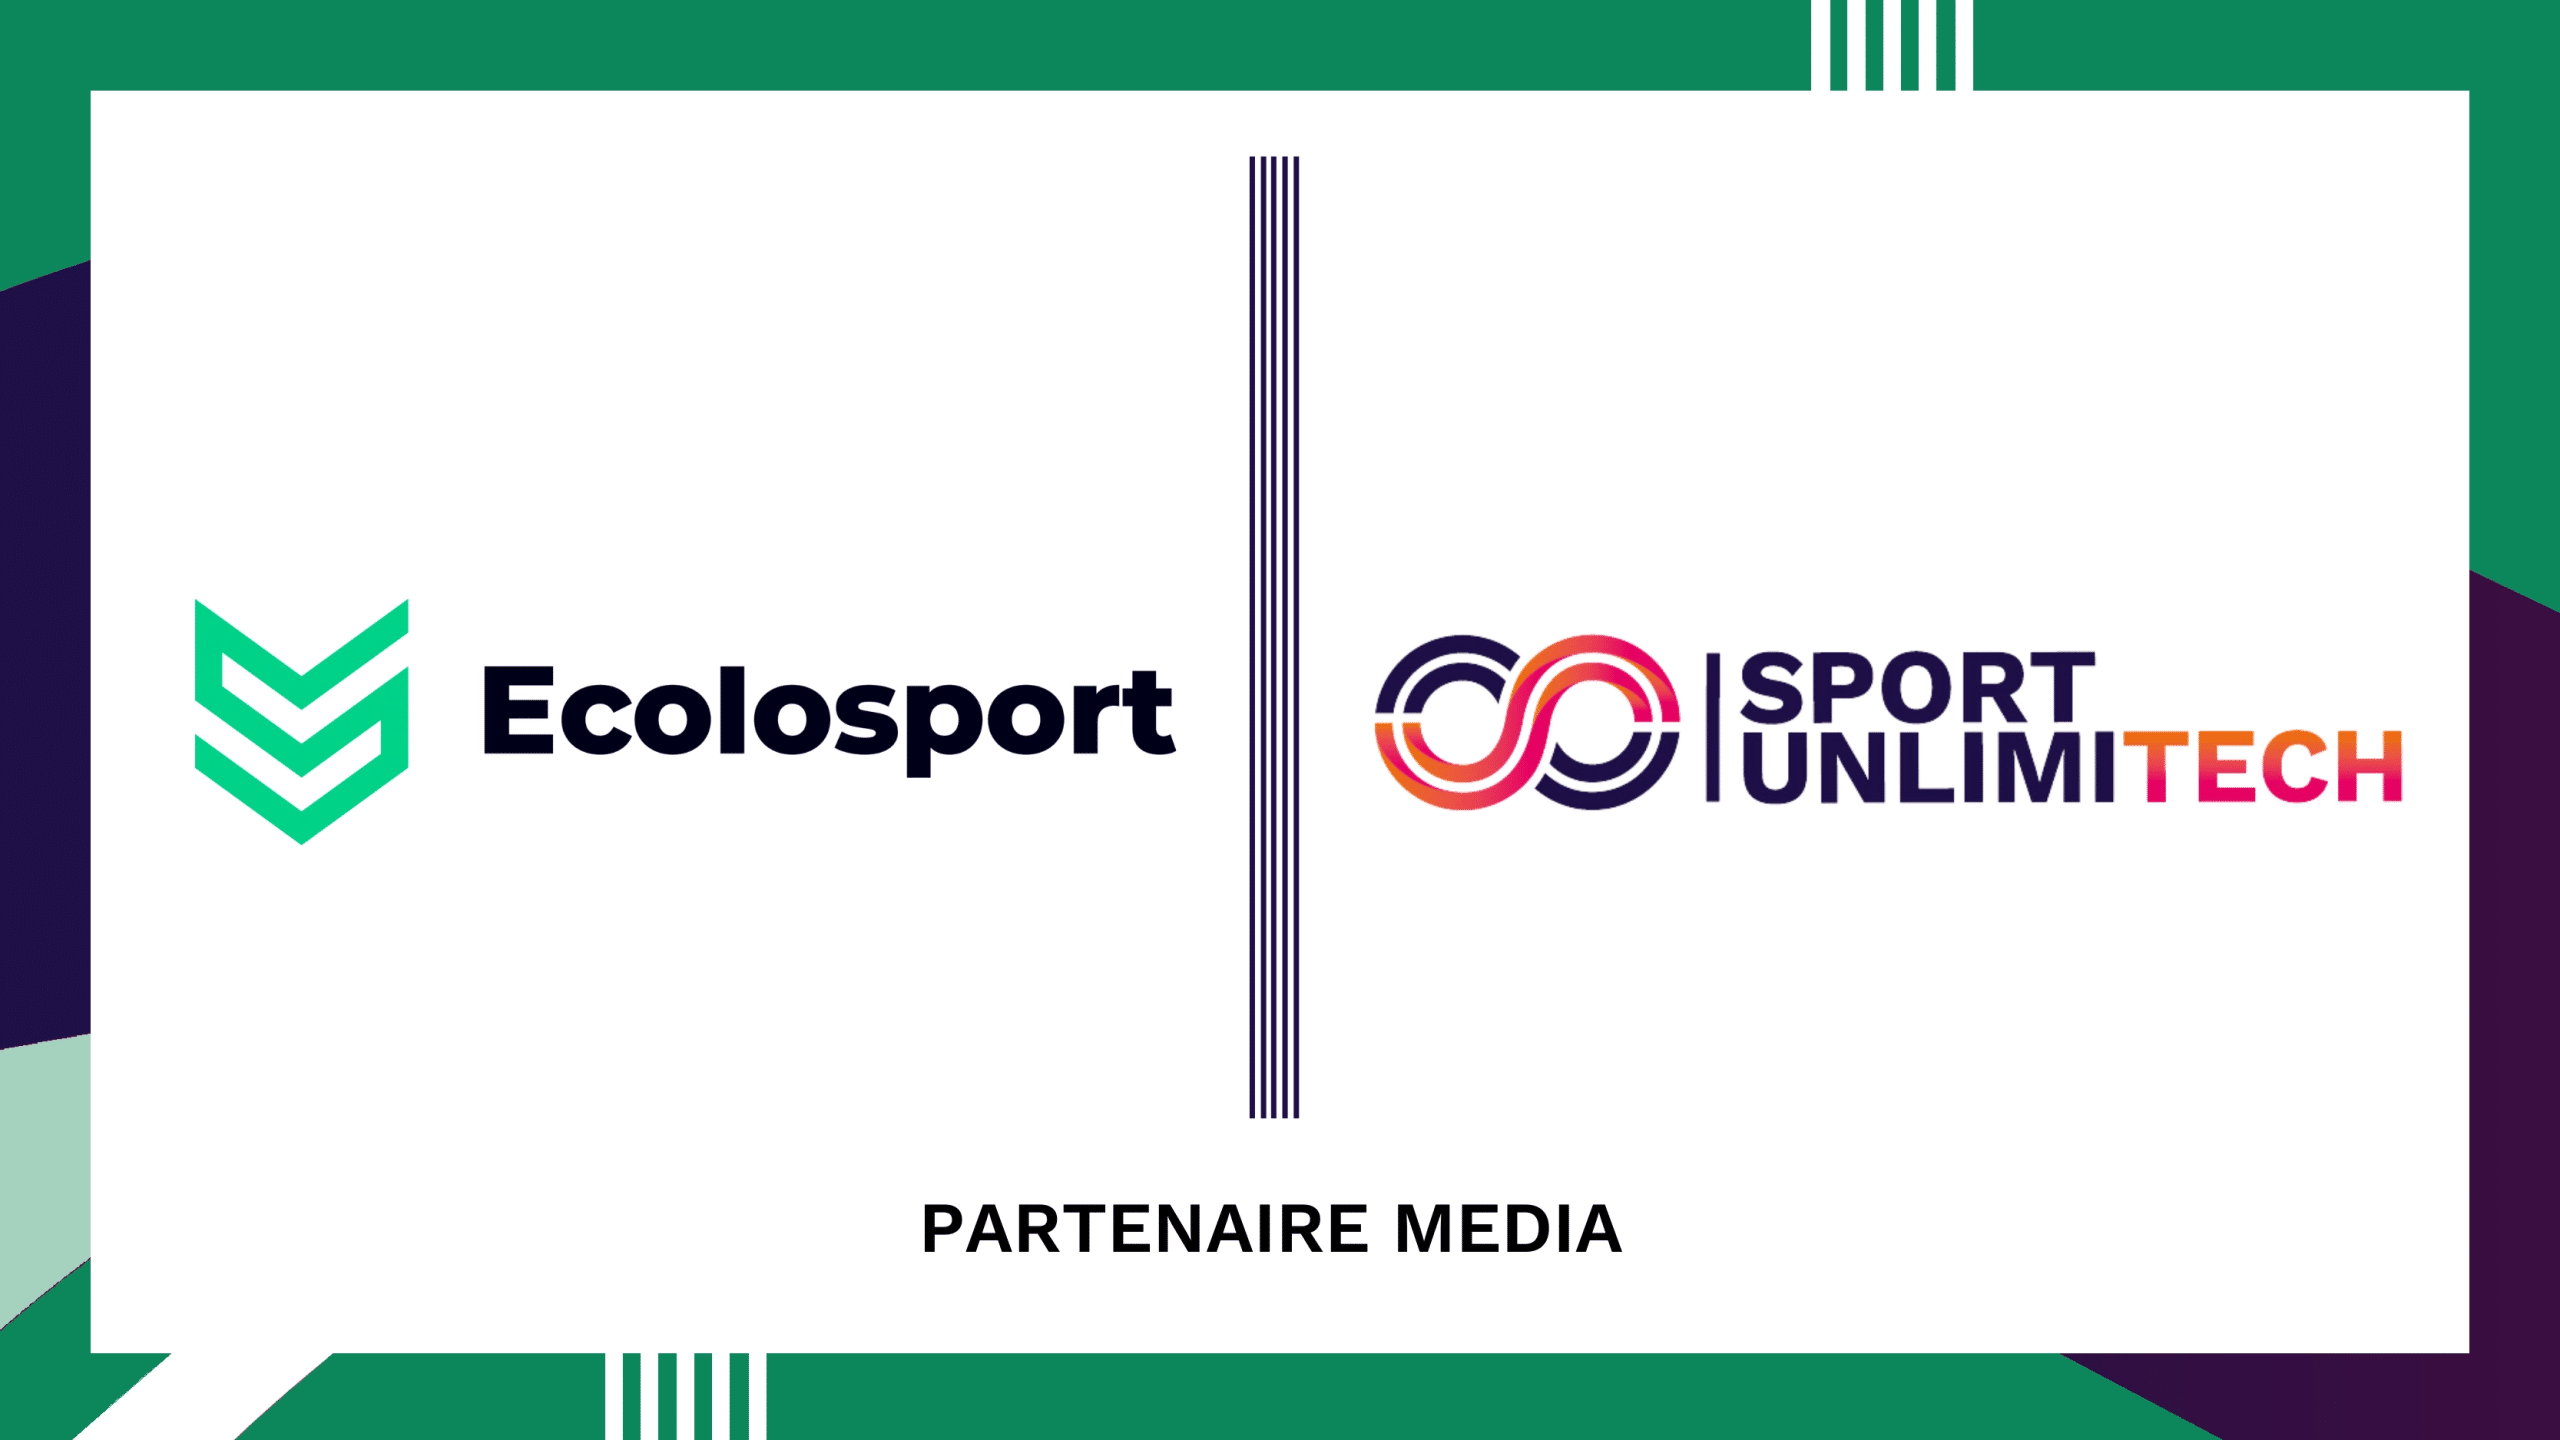 Le média Ecolosport devient partenaire de Sport Unlimitech